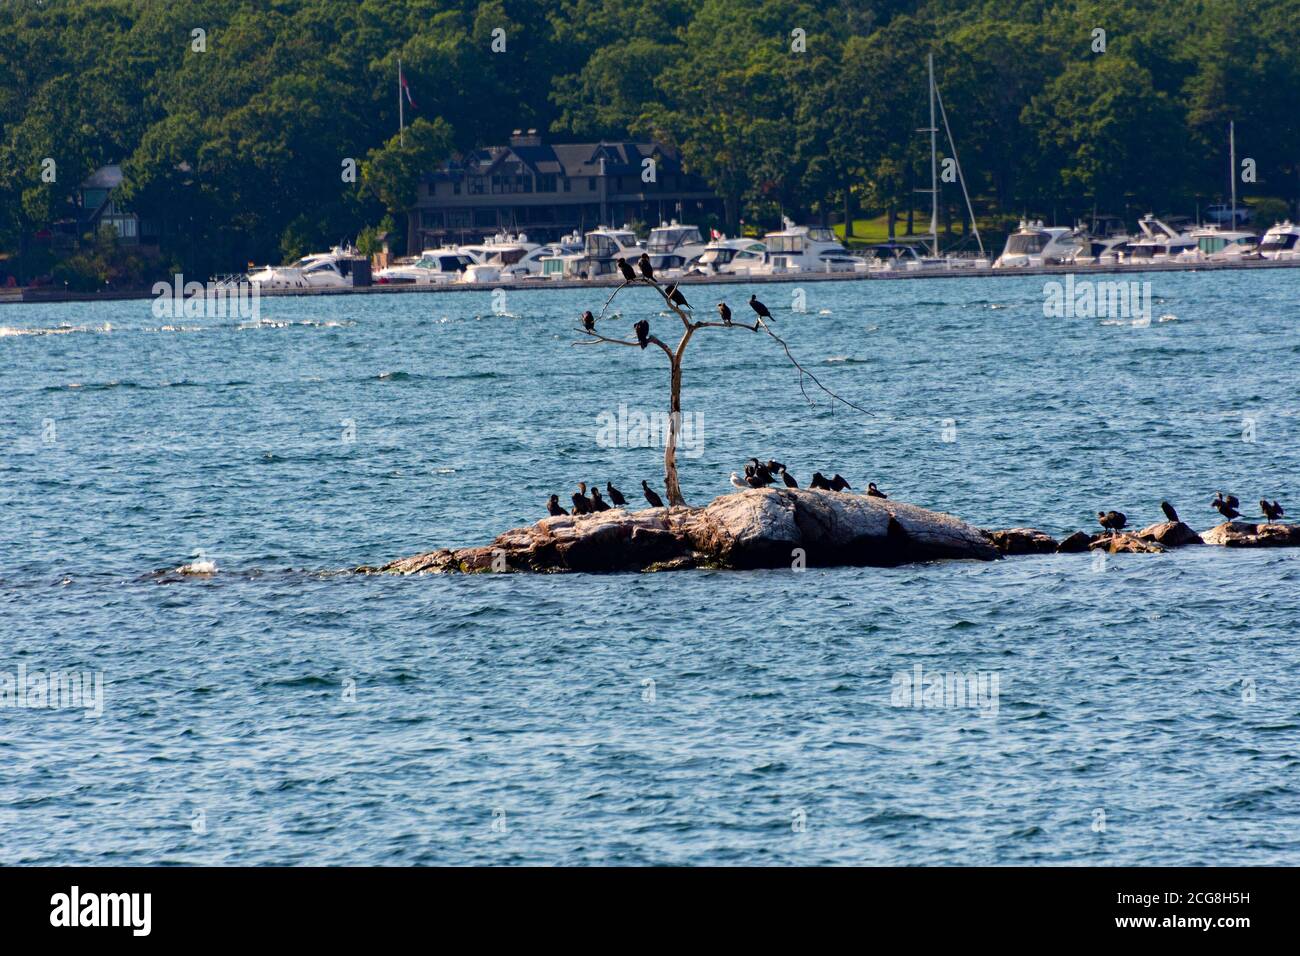 Kormorane sonnen sich auf einer kleinen Insel, die auf einem Trockenen sitzt Baum und auf Steinen gegenüber dem Parkplatz der Boote Und Yachten Stockfoto